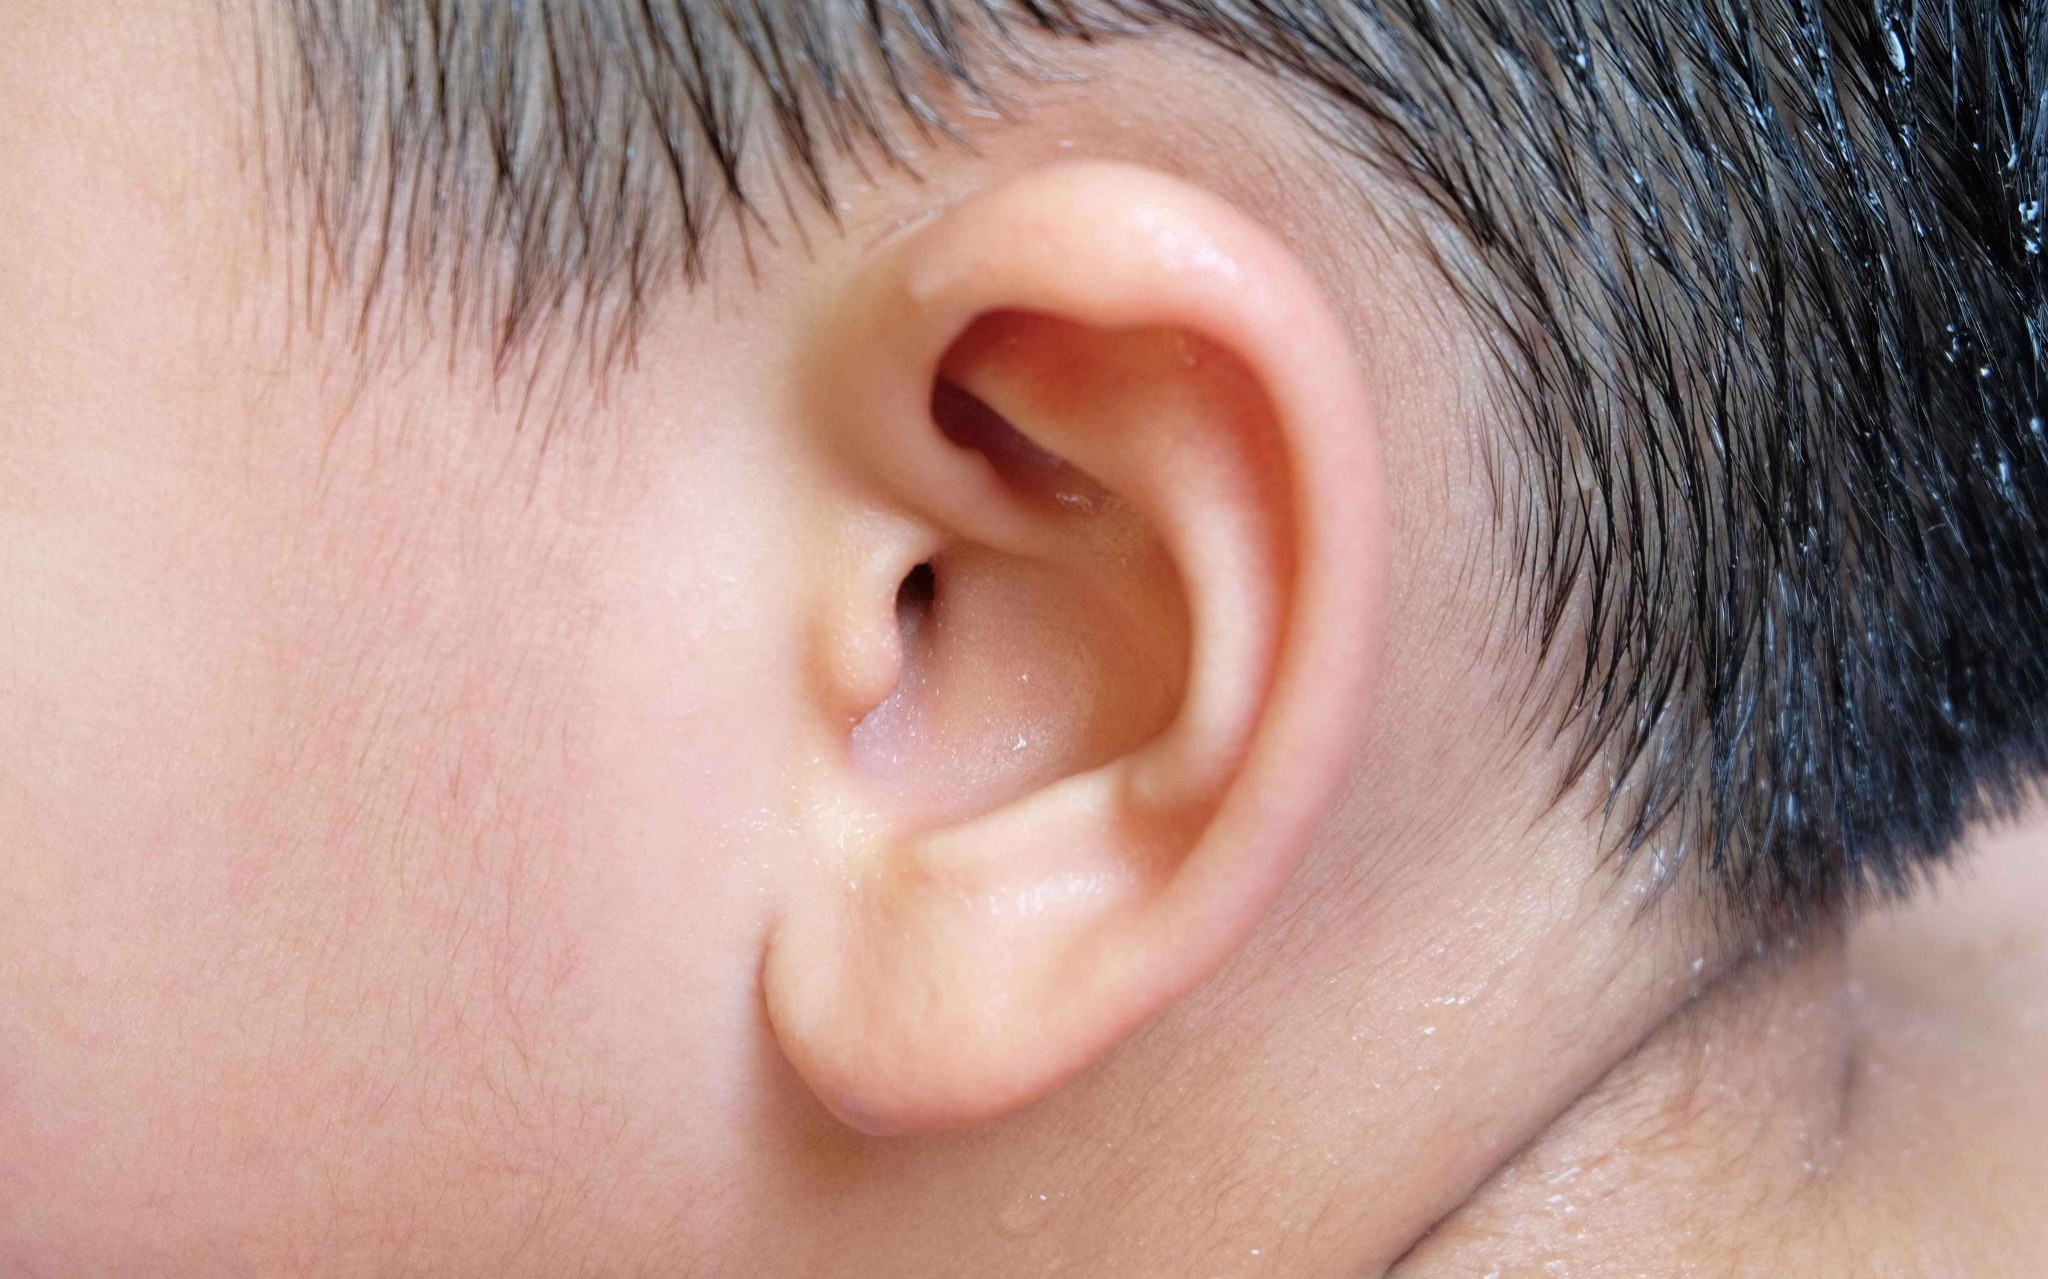 劉承信醫師丨 耳鼻喉頭頸專科｜顏面整型重建專科 ｜美好的外型 更佳的呼吸: 耳屎多耳朵癢要怎麼清耳屎？耳朵醫師建議你這樣挖耳朵耳屎耳垢